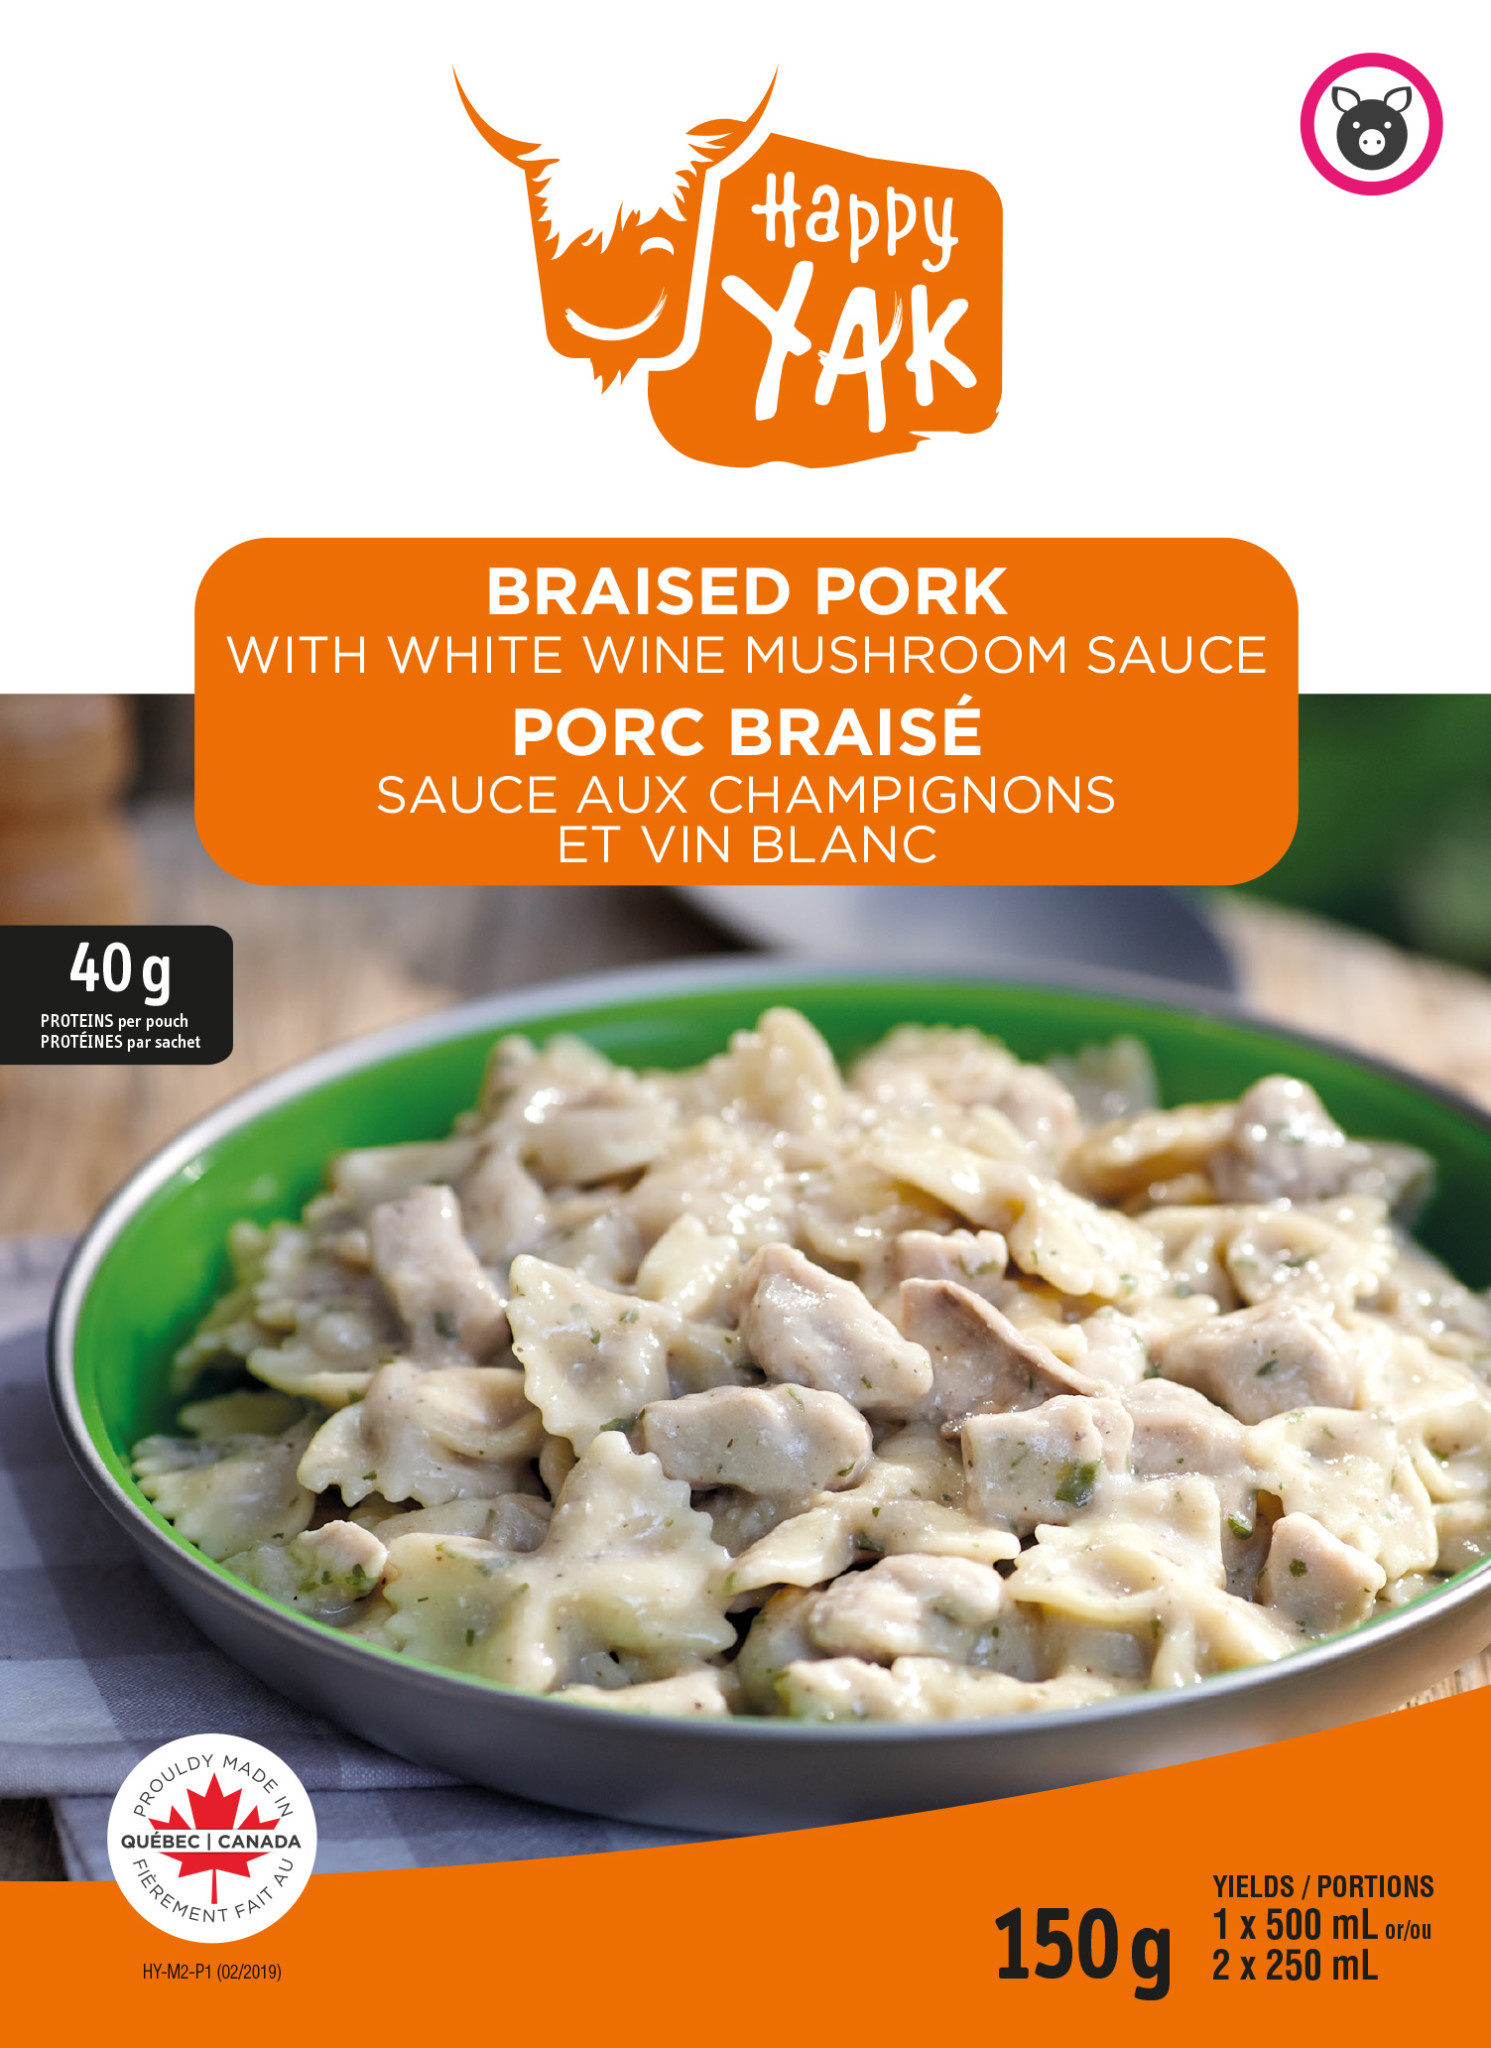 Happy Yak Braised Pork with White Wine Mushroom Sauce